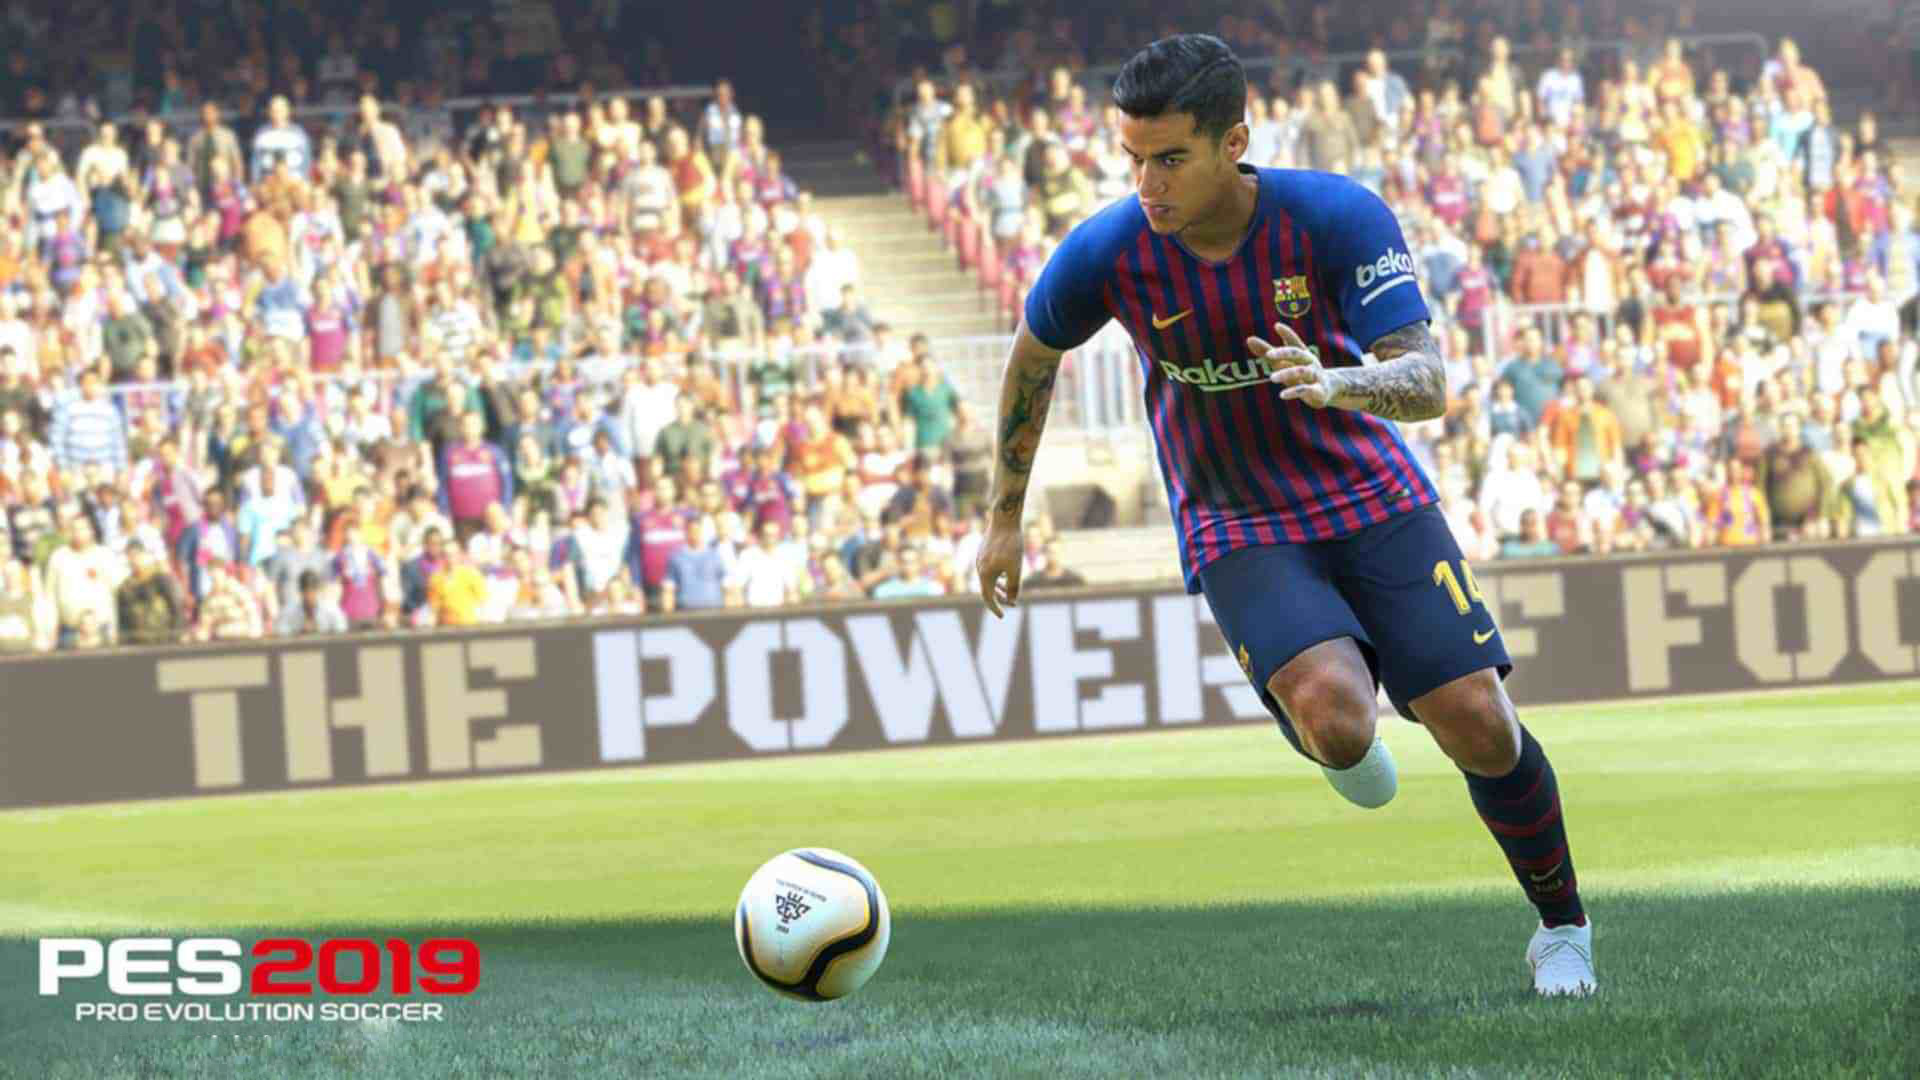 Pro-Evolution-Soccer-2019-1080P-Wallpaper.jpg